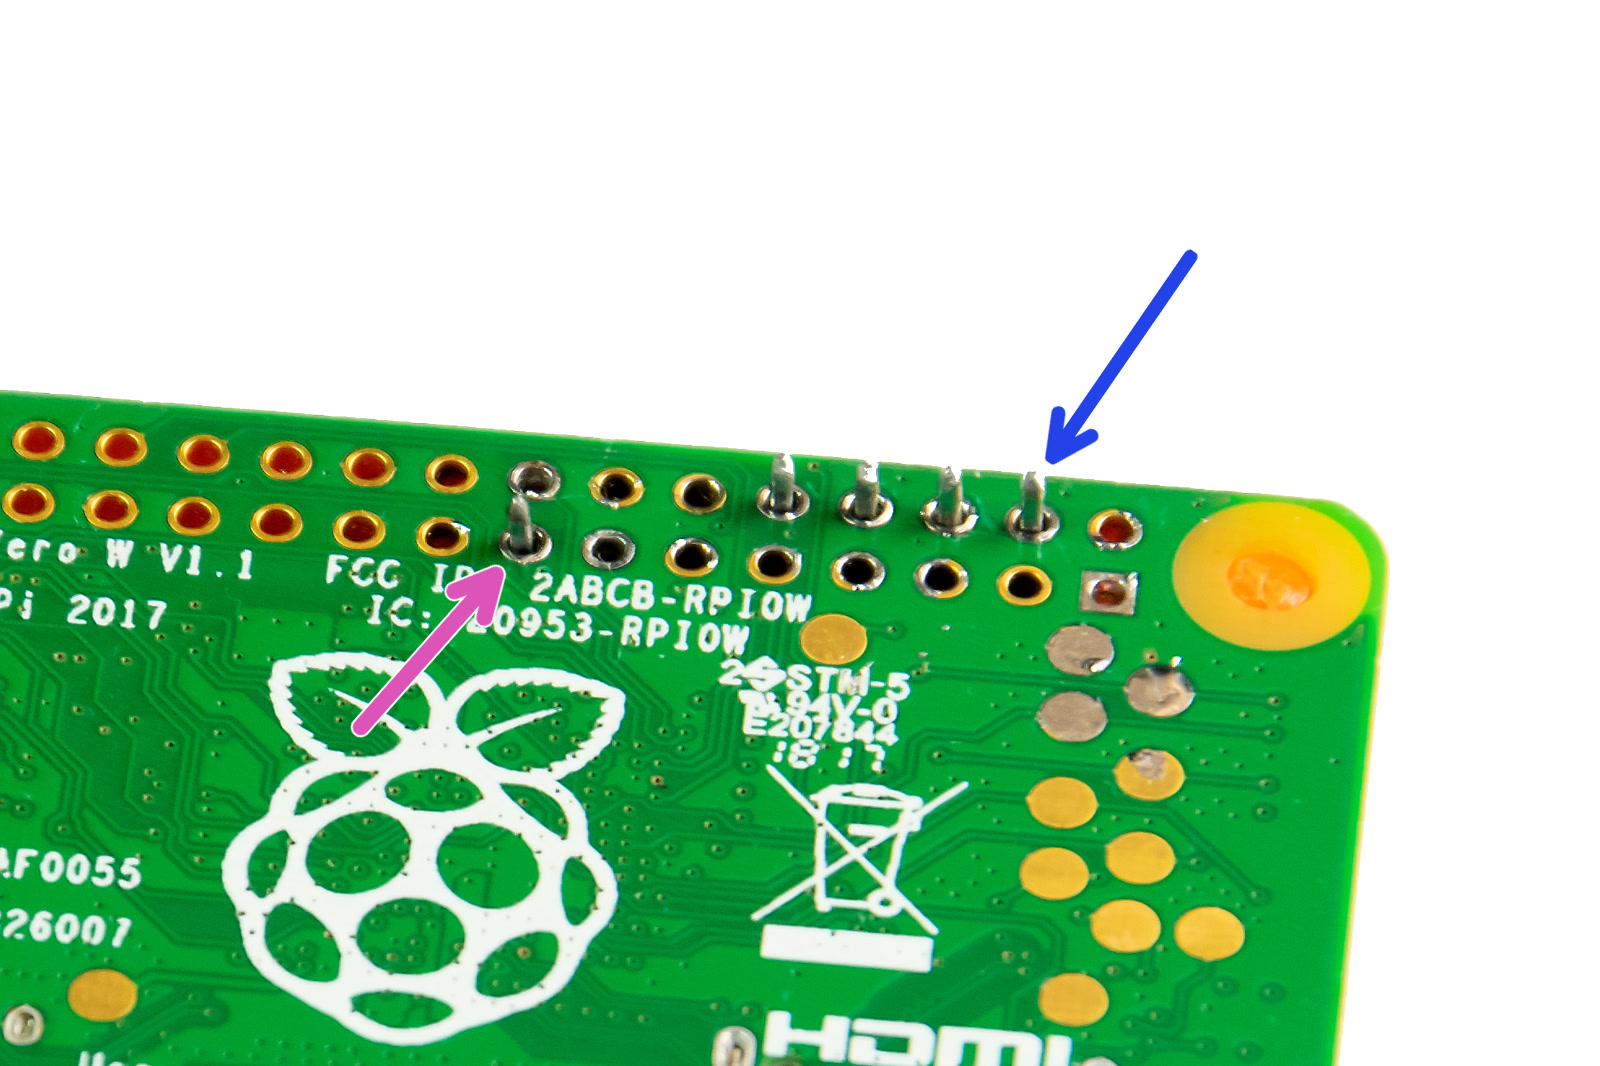 Raspberry Pi Zero (2) W mount for Original Prusa i3 MK3S+ by